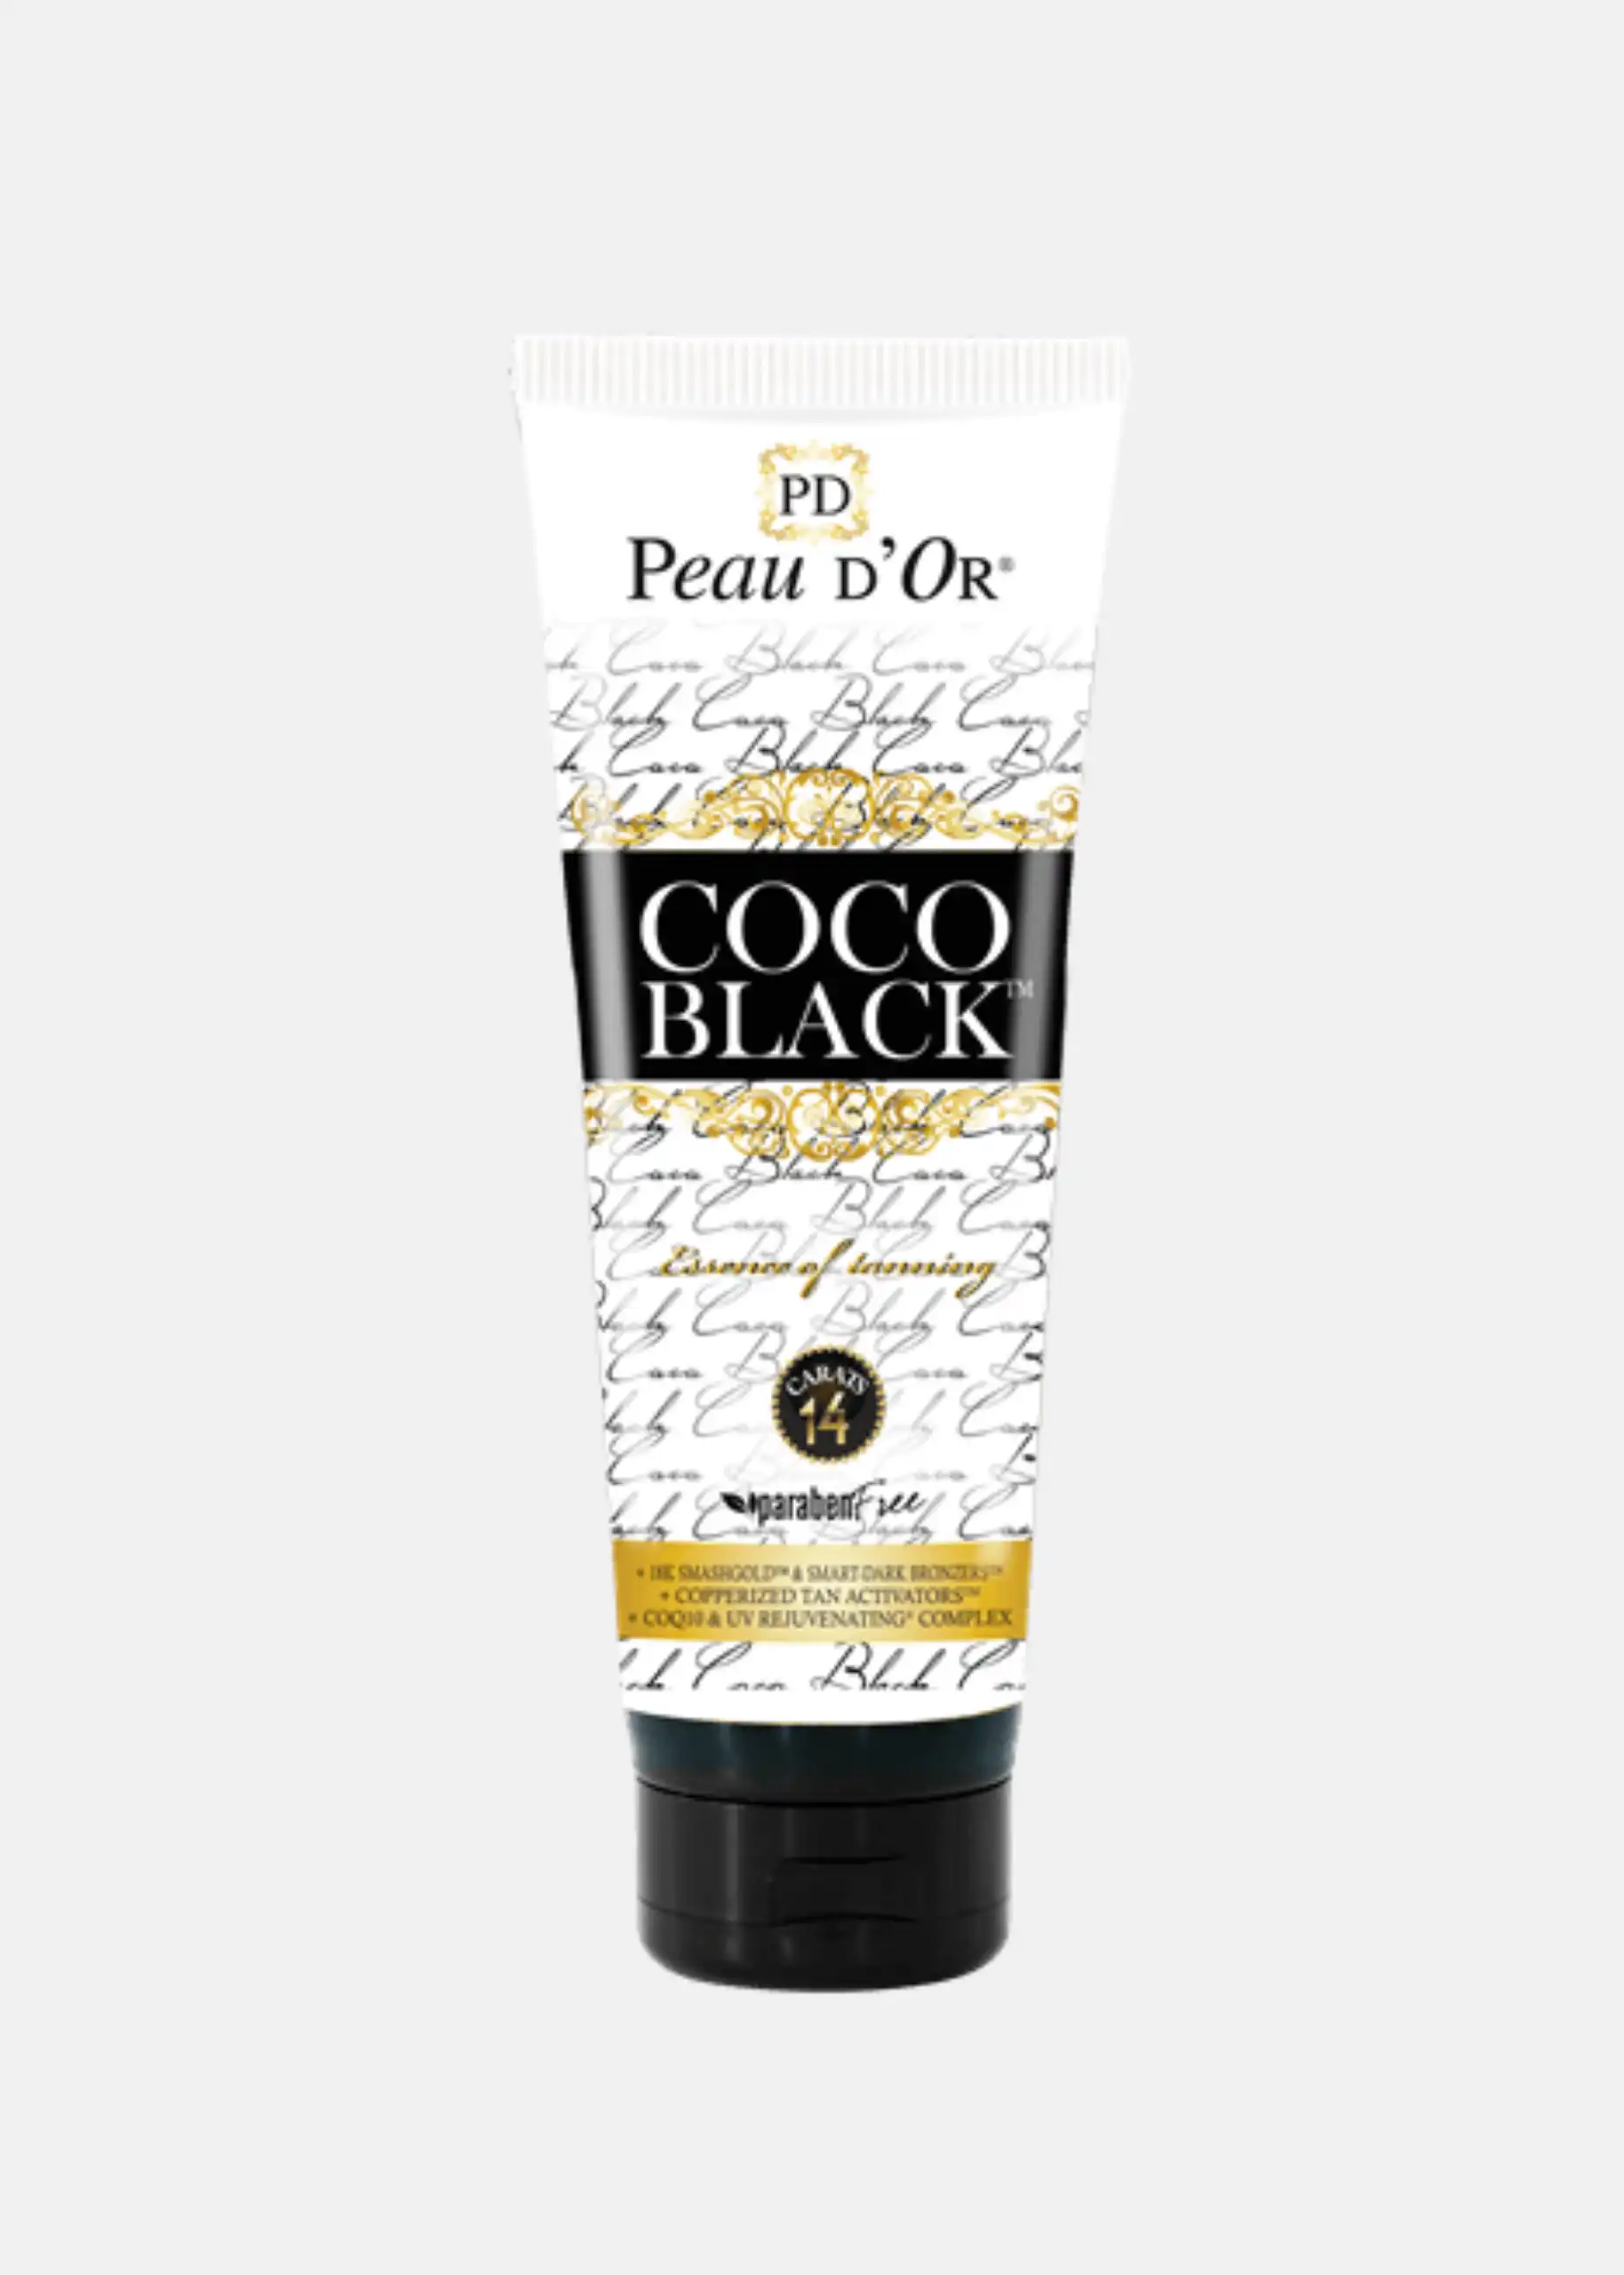 Coco Black flacone Peau D'Or